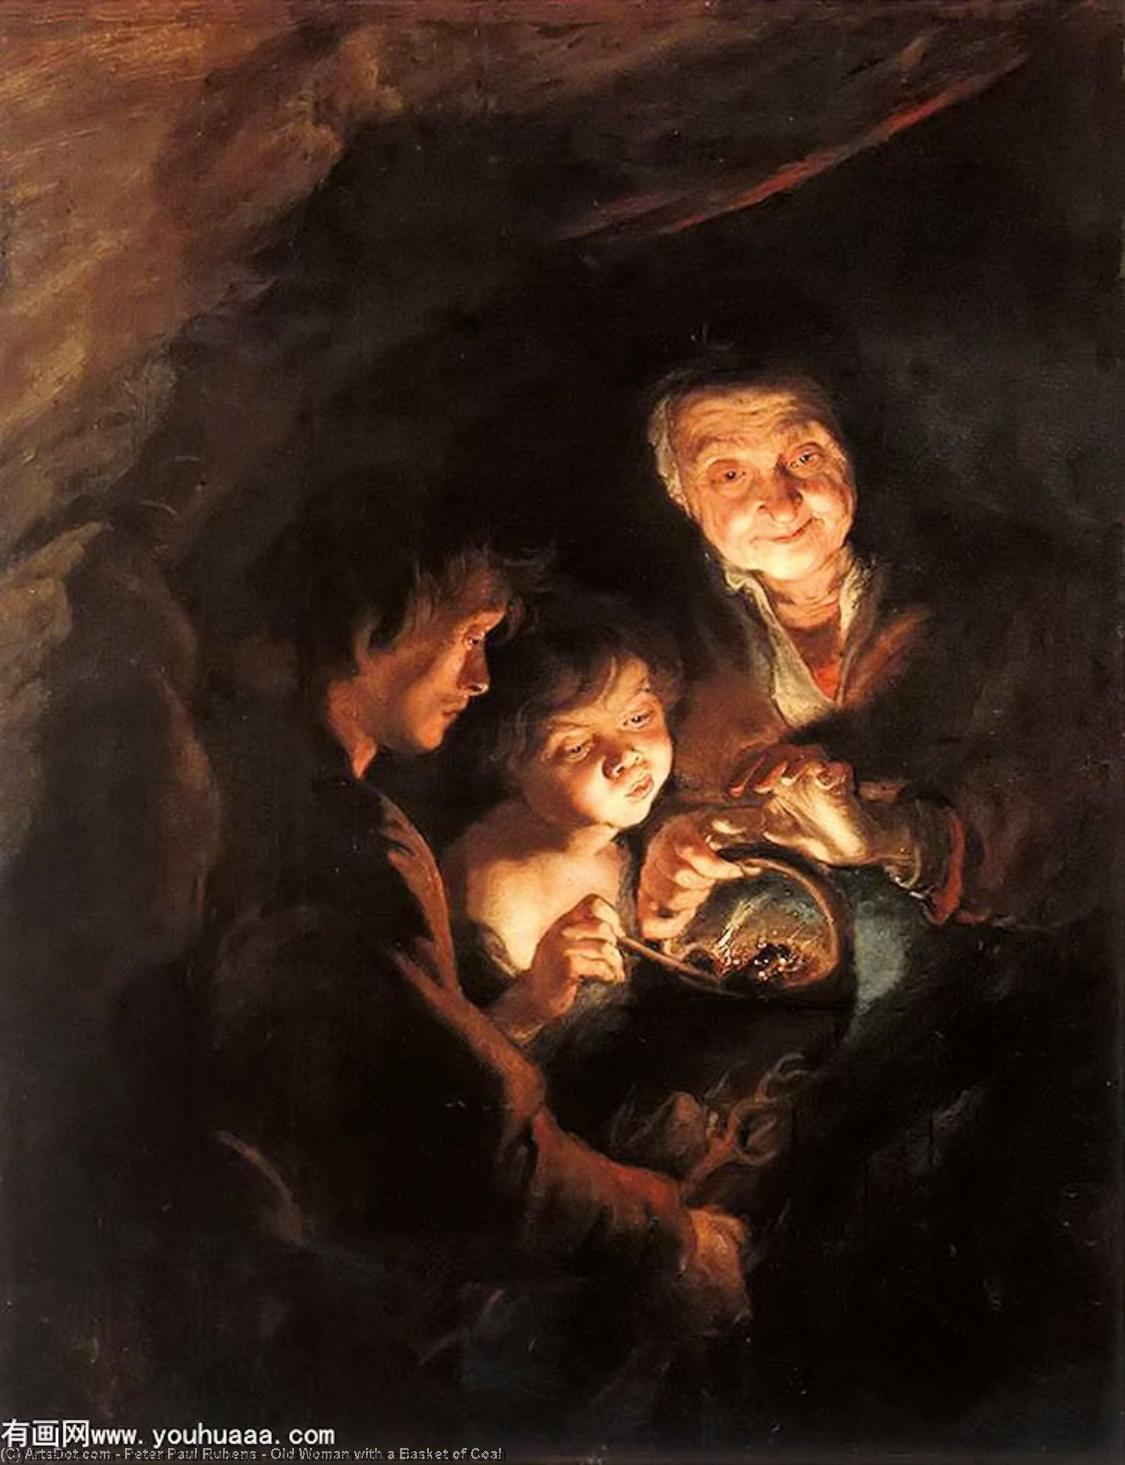 WikiOO.org - Энциклопедия изобразительного искусства - Живопись, Картины  Peter Paul Rubens - старая женщина с     Баскет  самого  уголь